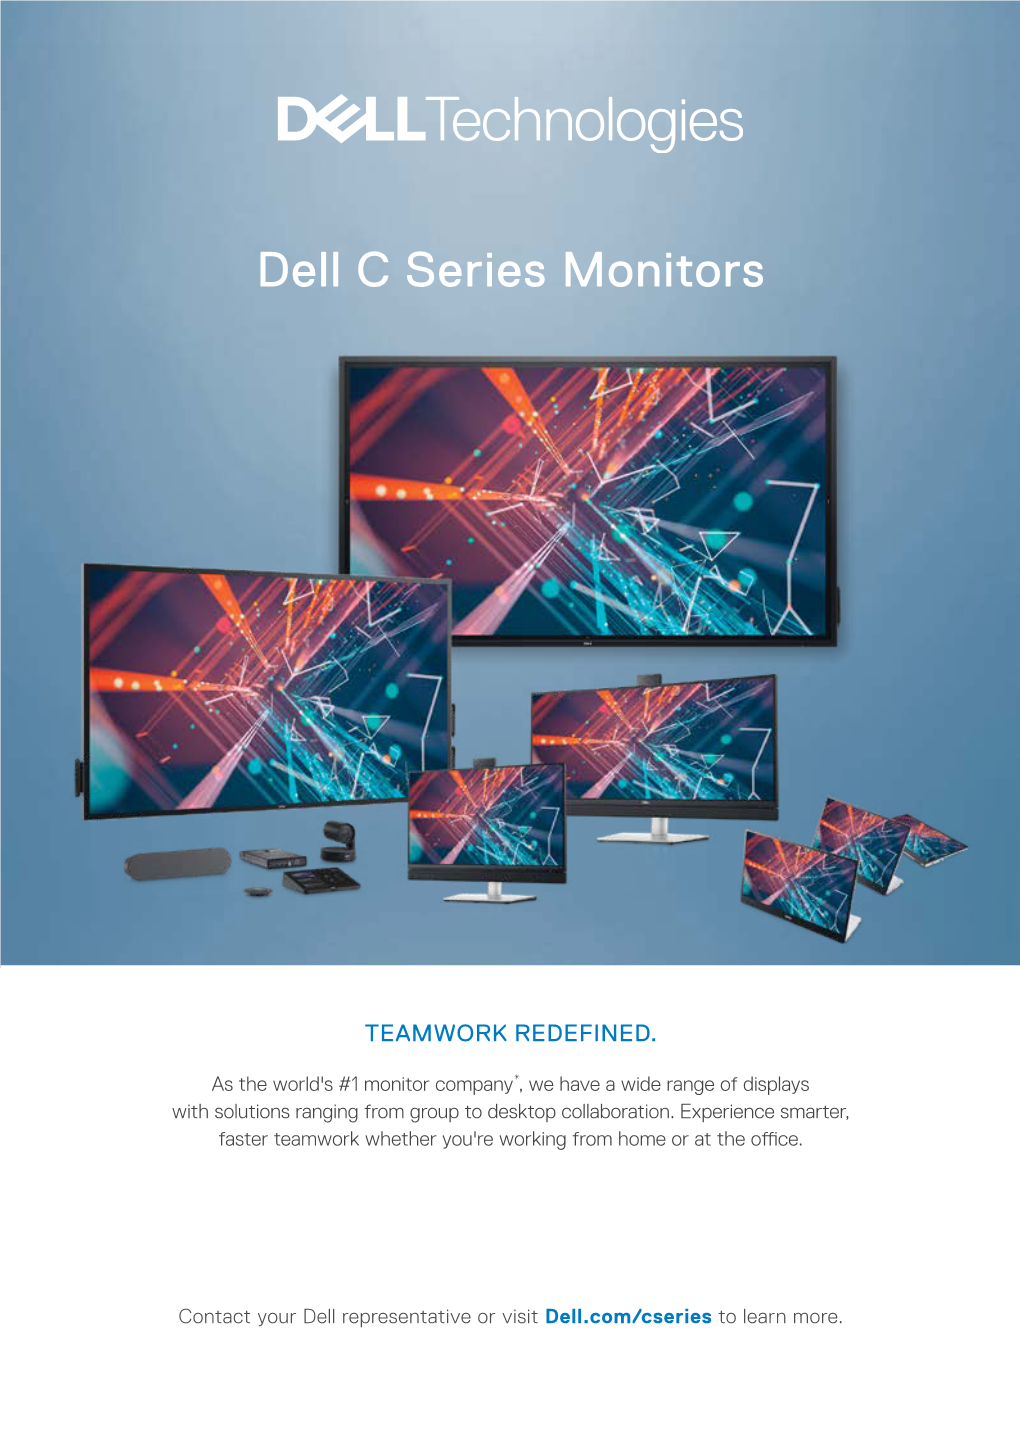 Dell Collaboration Monitors Brochure